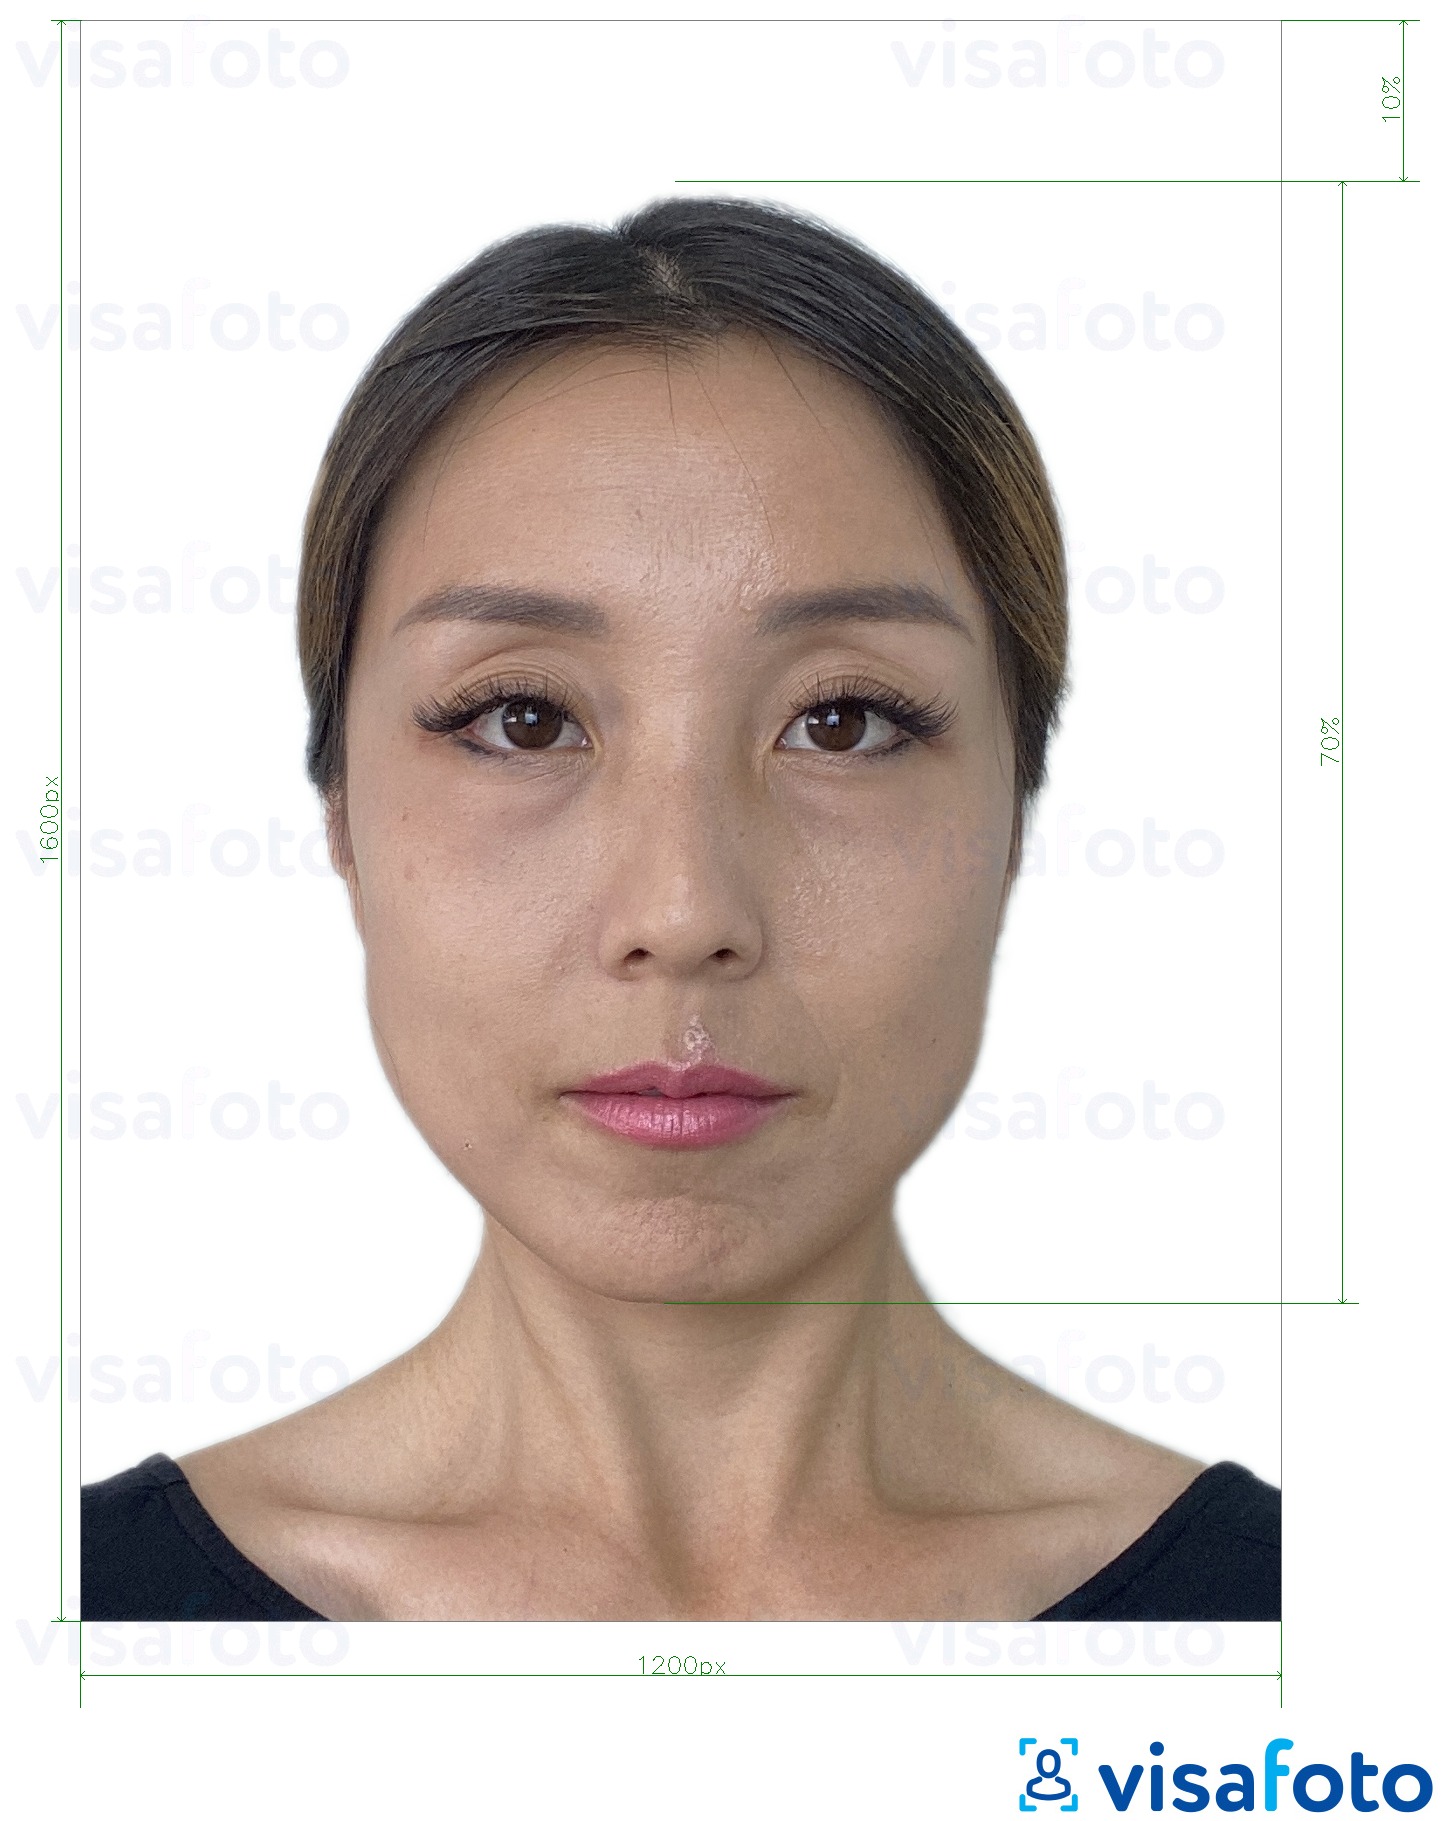 Príklad fotografie pre Online e-vízum v Hongkongu 1200 x 1600 pixelov s presnou špecifikáciou veľkosti